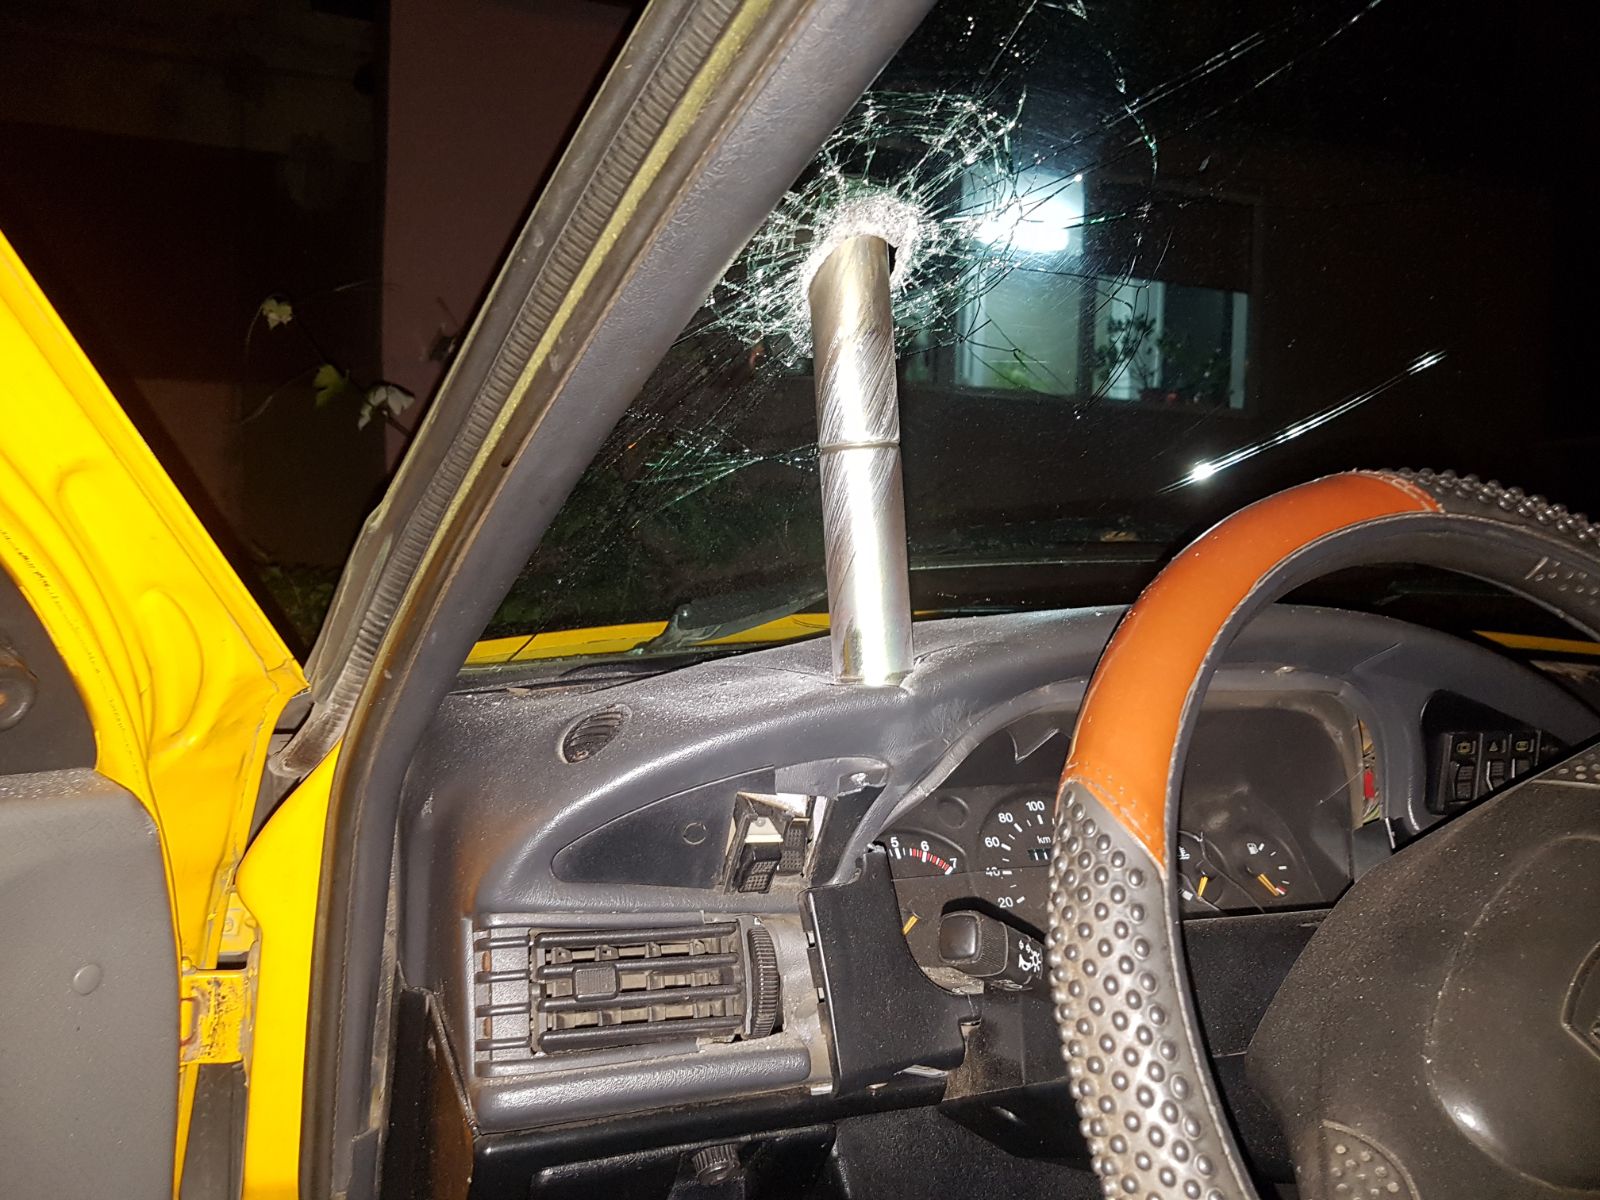 Maşină distrusă de un cilindru misterios din metal, în Craiova. Oamenii cred că e o armă